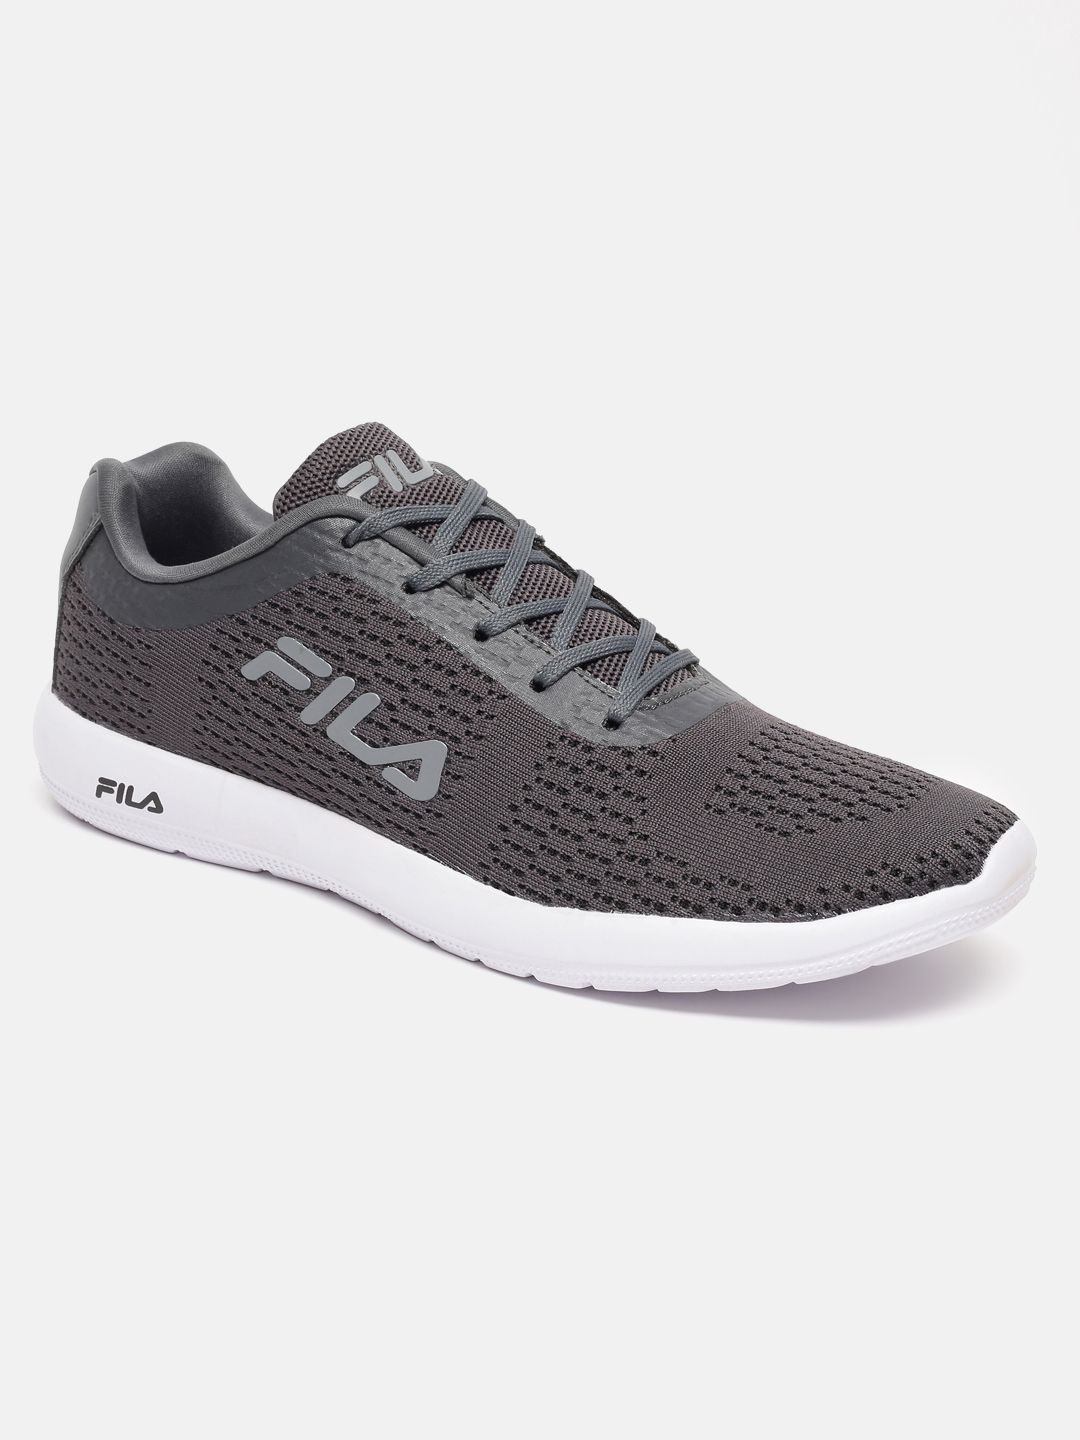 Fila Tennis Shoes – Fila Shoes for Men & Women | Shopping.tennis